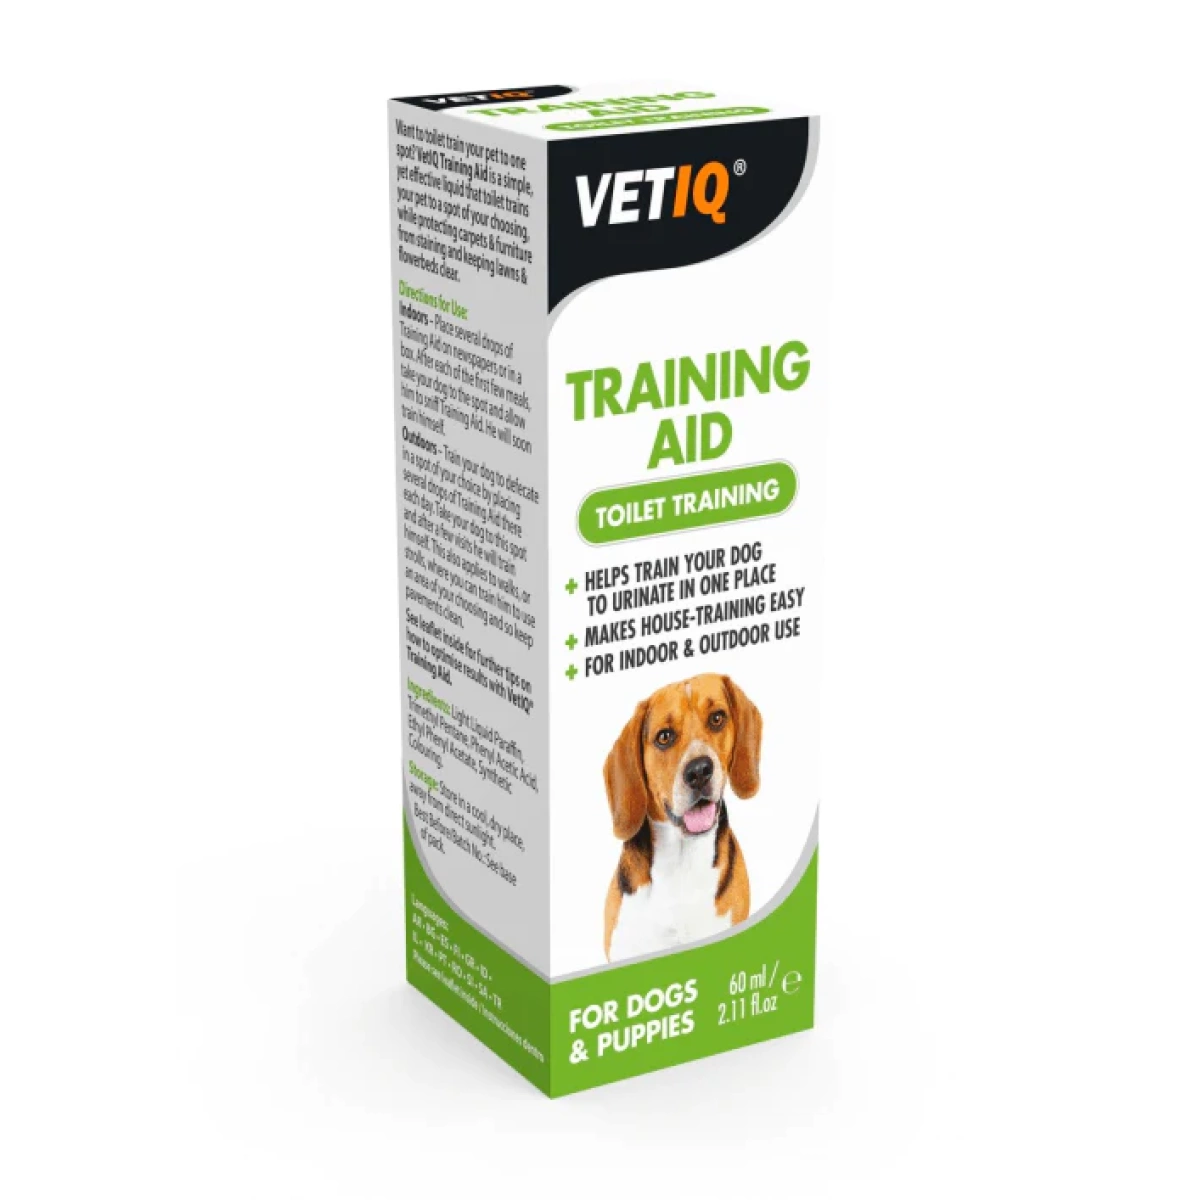 VETIQ Training Aid 60ml Main Image